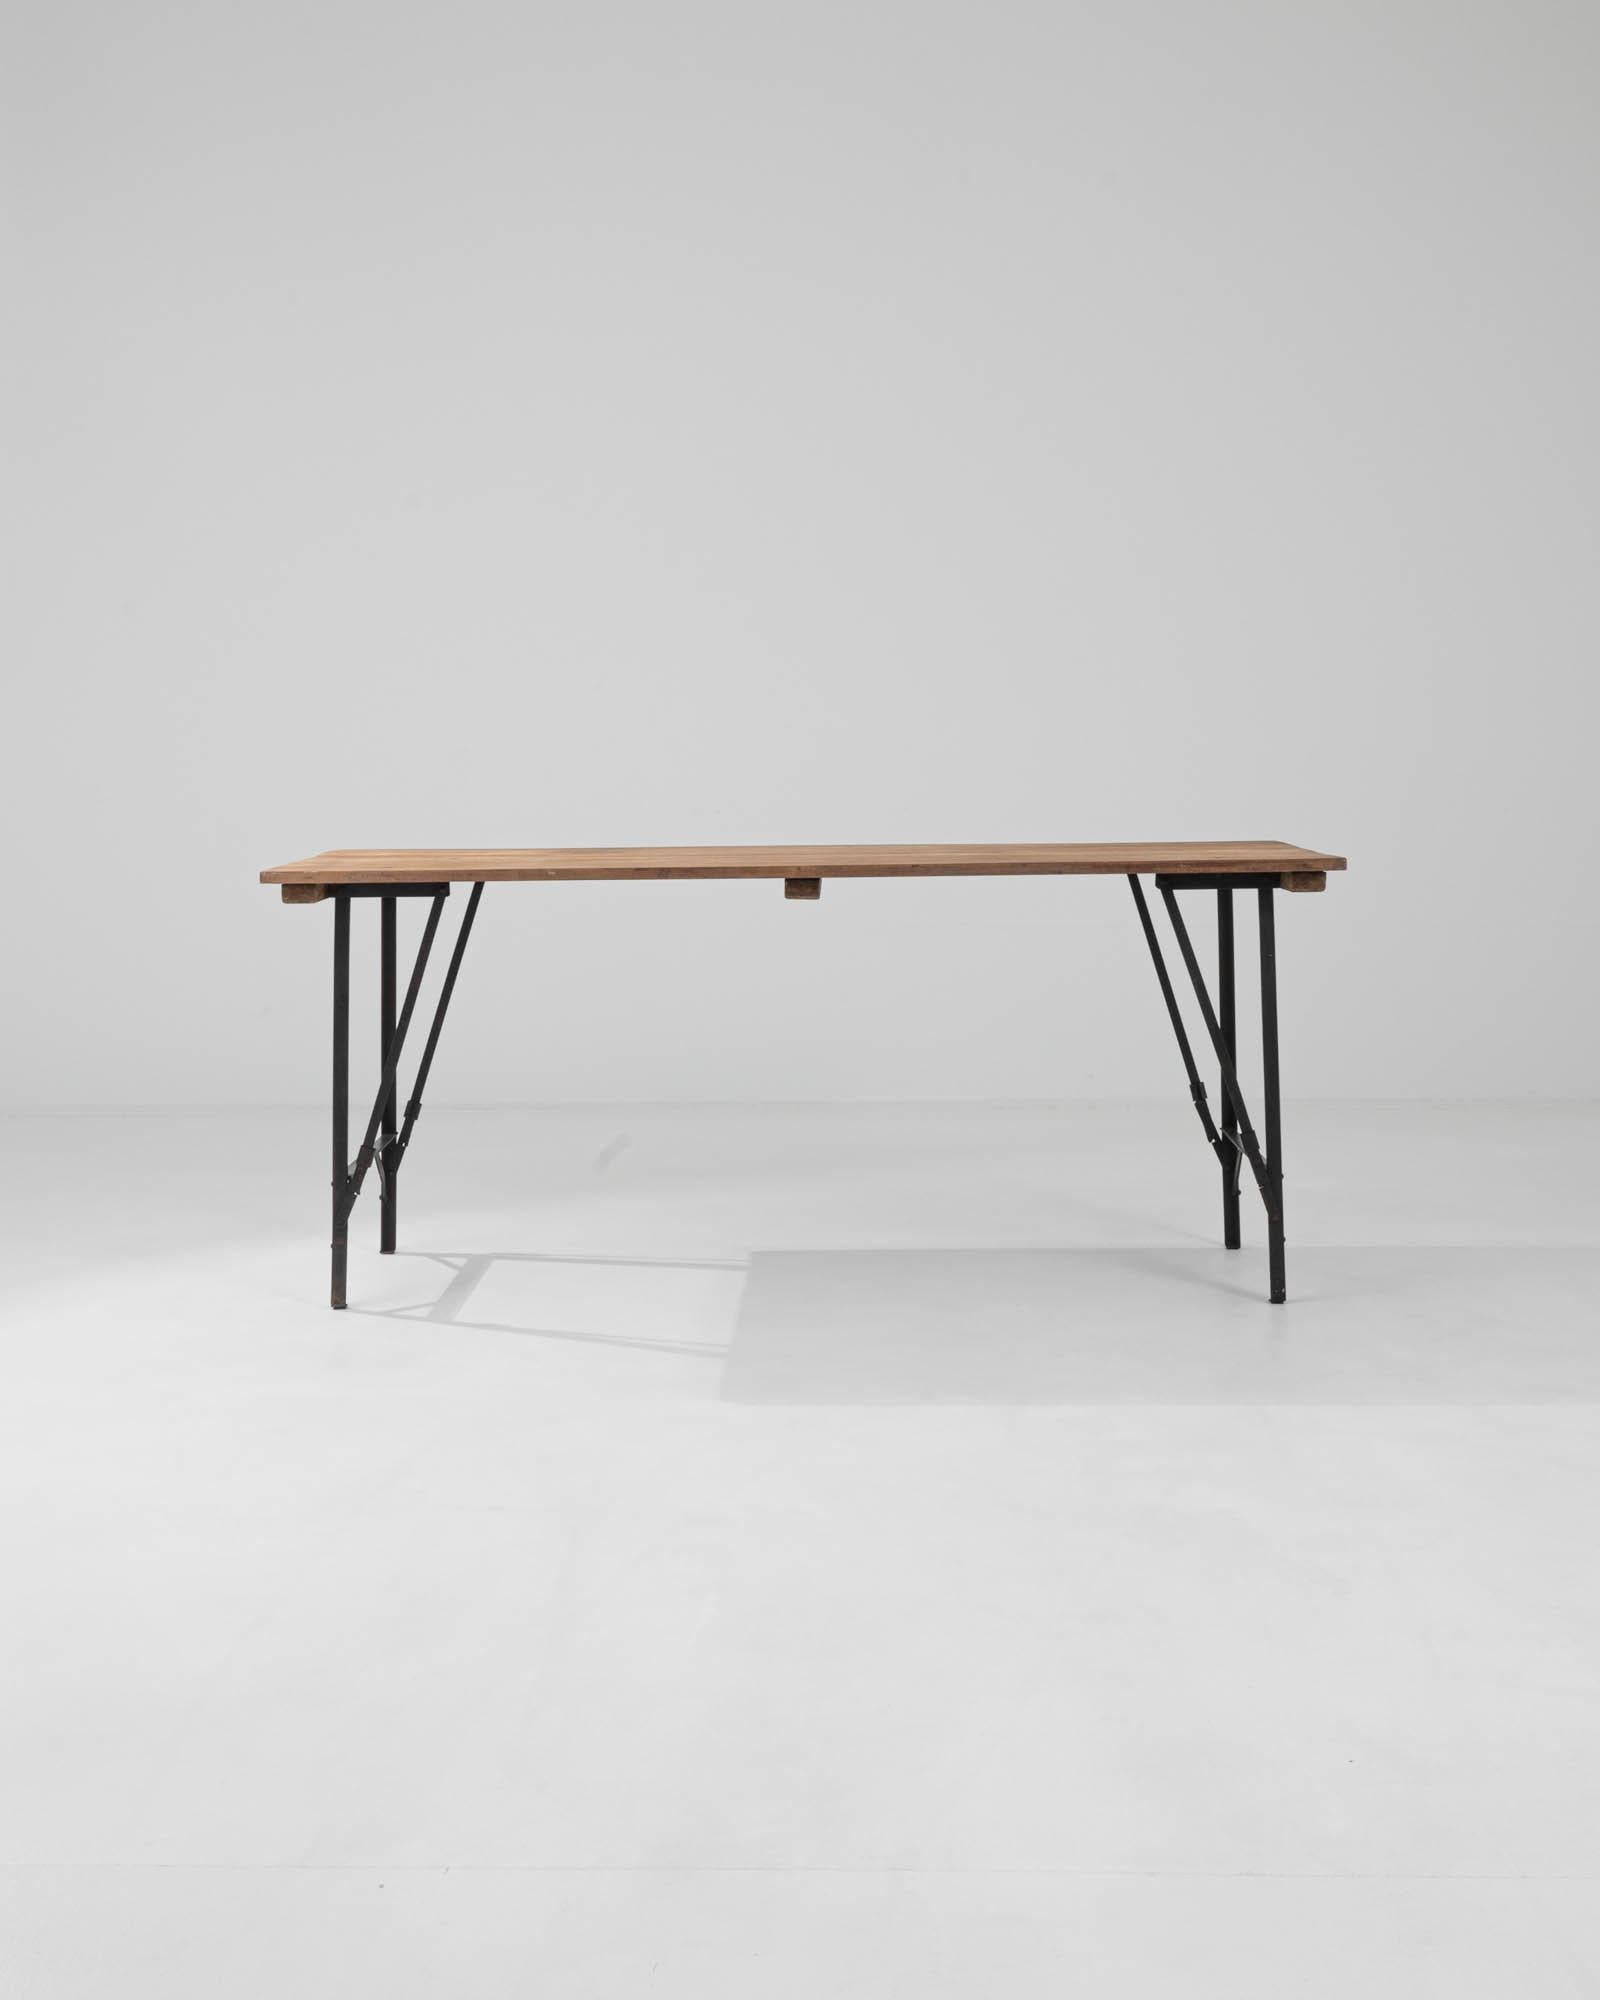 Dieser schlichte, aber wunderbar vielseitige, rustikale Tisch setzt einen attraktiven Vintage-Akzent. Die im 20. Jahrhundert in Belgien gebaute, leichte Form besteht aus einer Tischplatte aus natürlichen Holzbrettern, die auf einem schlanken